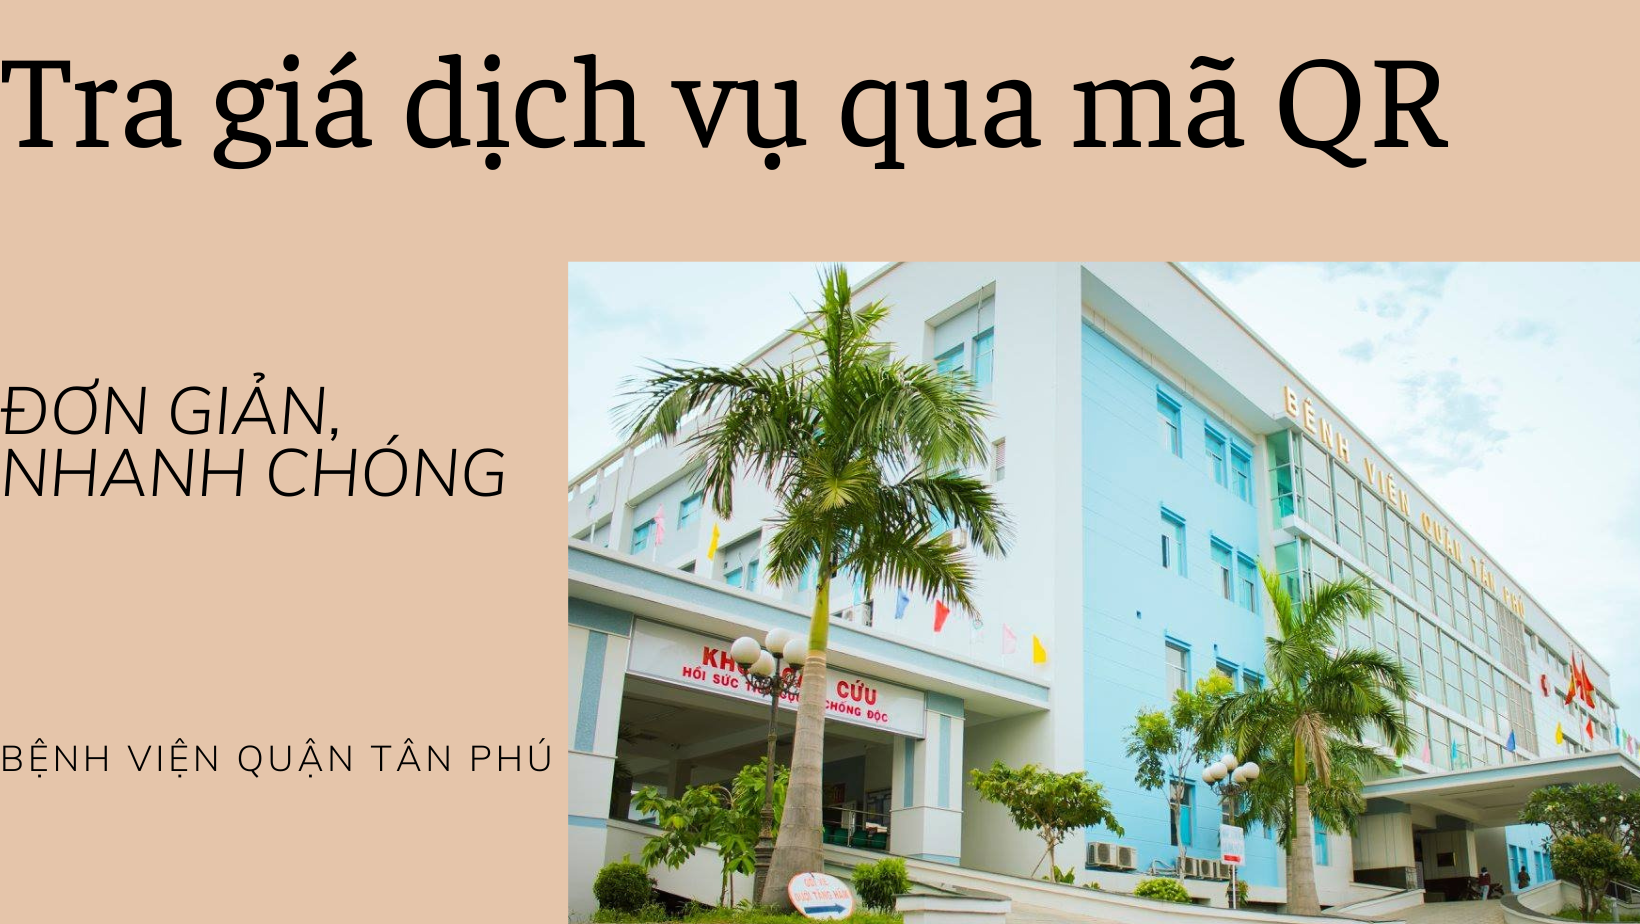 Tra cứu bảng giá dịch vụ bệnh viện quận Tân Phú